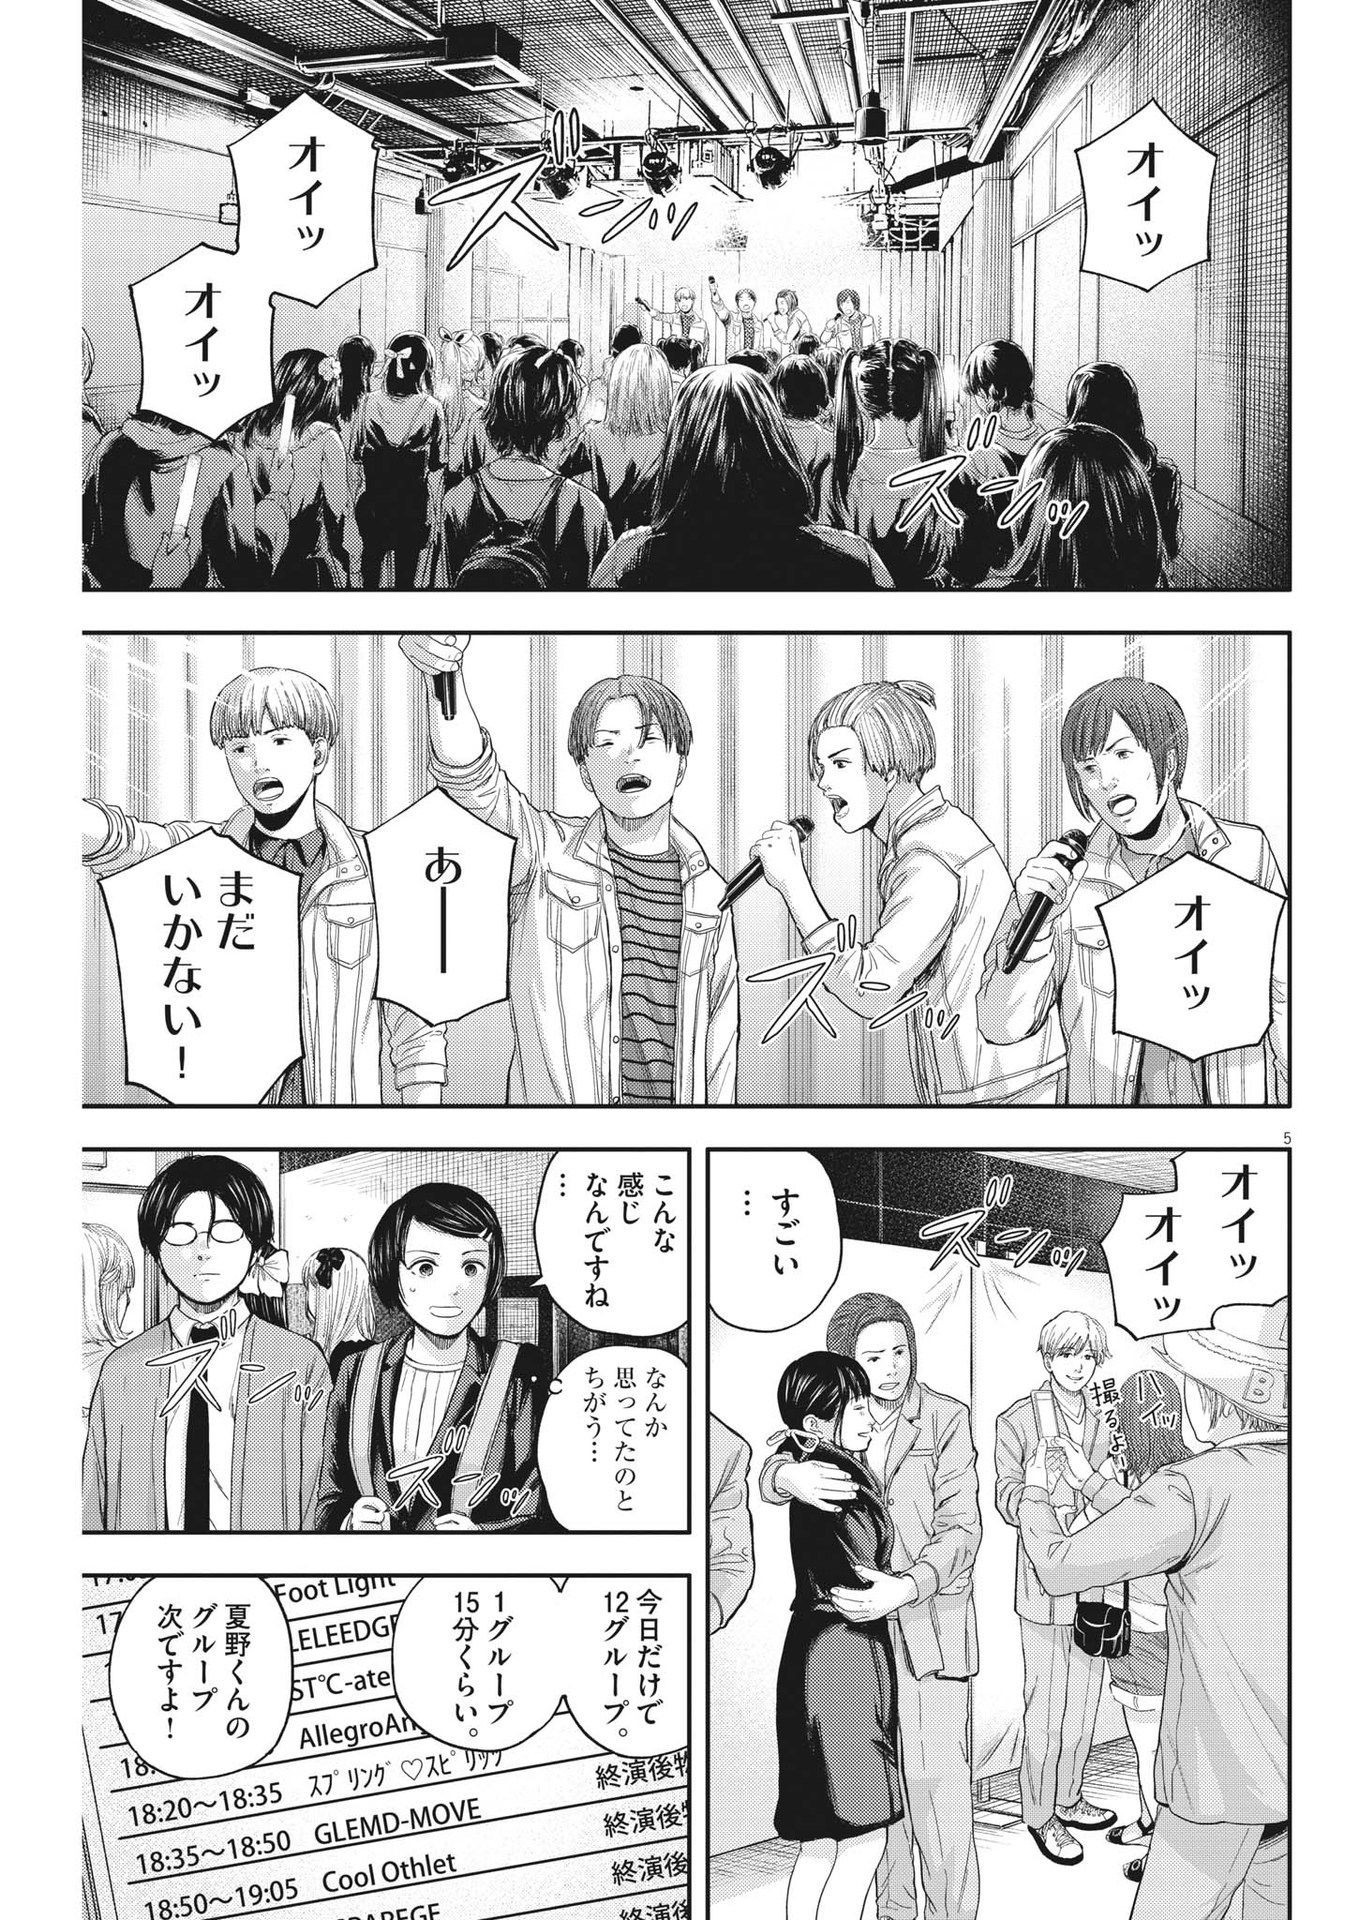 Yumenashi-sensei no Shinroshidou - Chapter 11 - Page 5